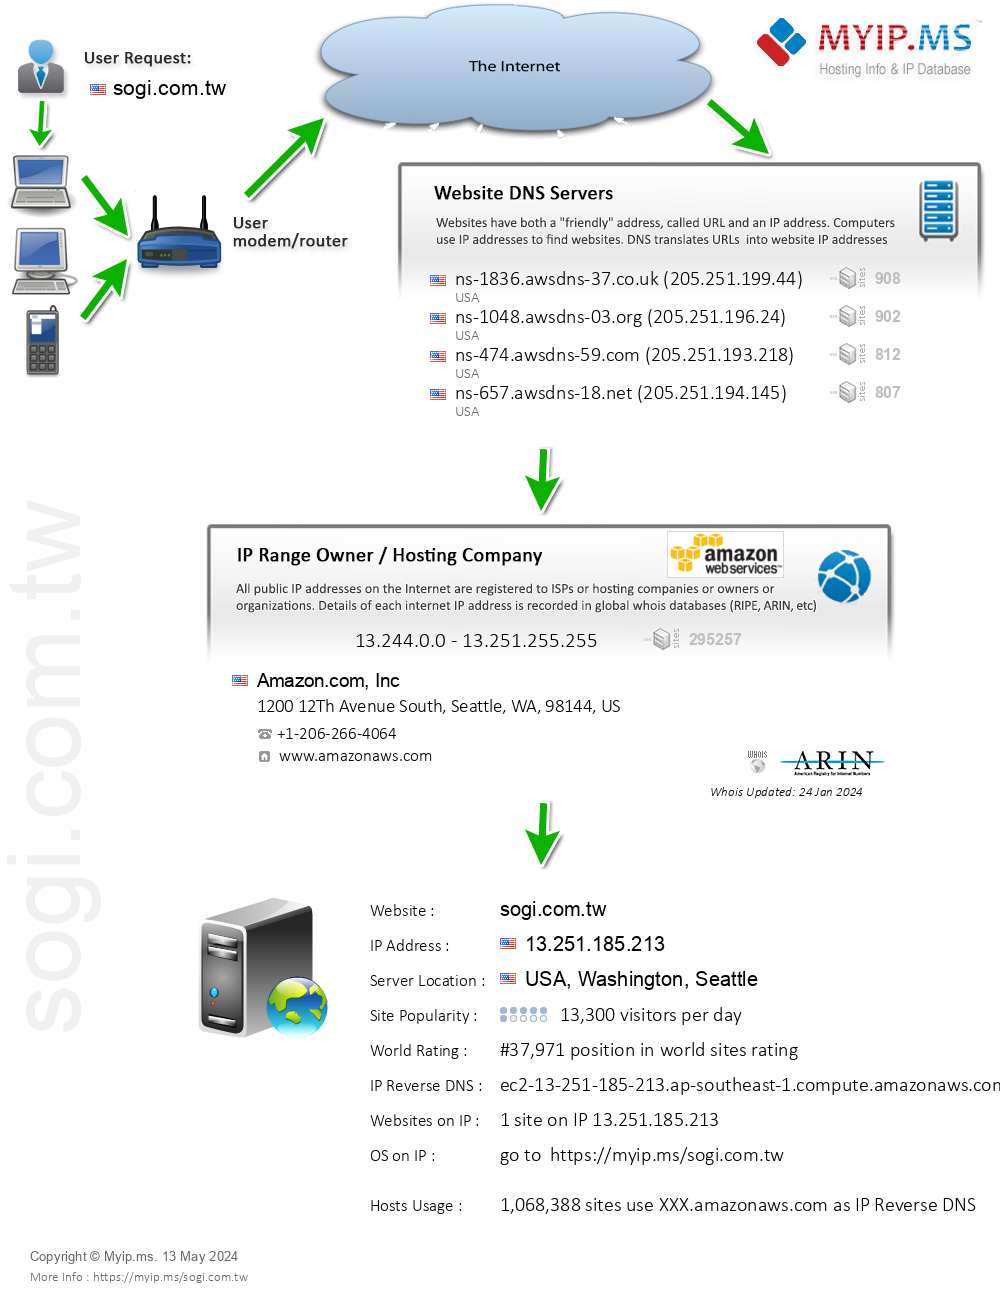 Sogi.com.tw - Website Hosting Visual IP Diagram